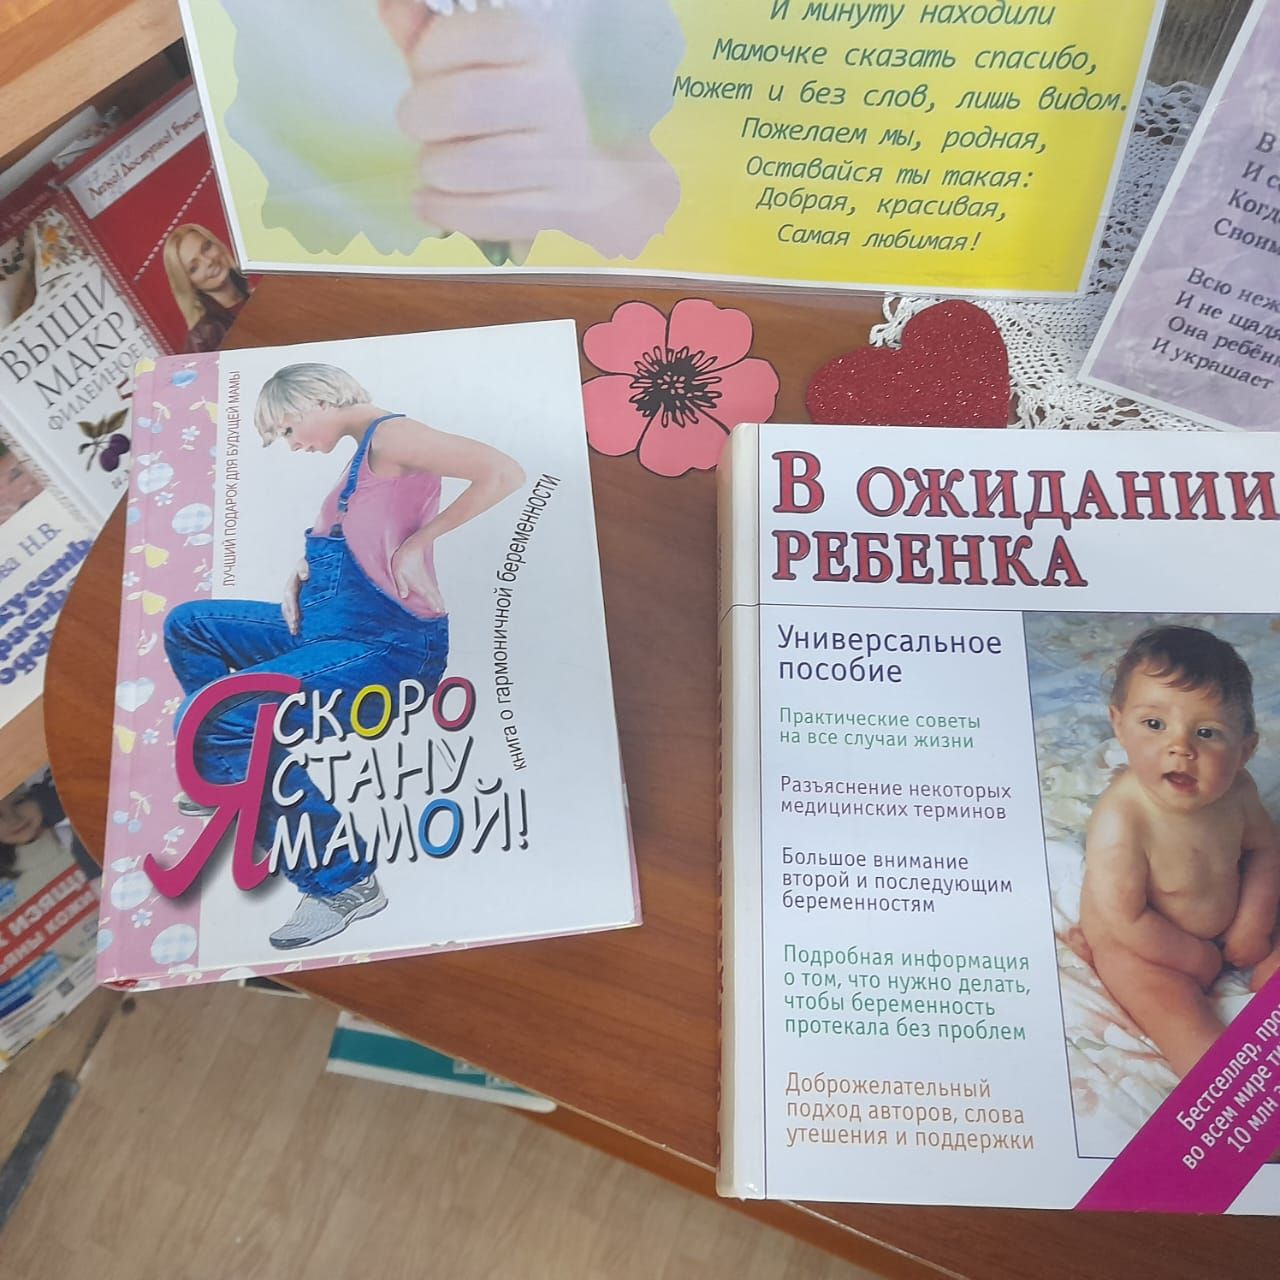 Книжная выставка «Любовью материнской мир прекрасен» оформлена в Лаишевской библиотеке